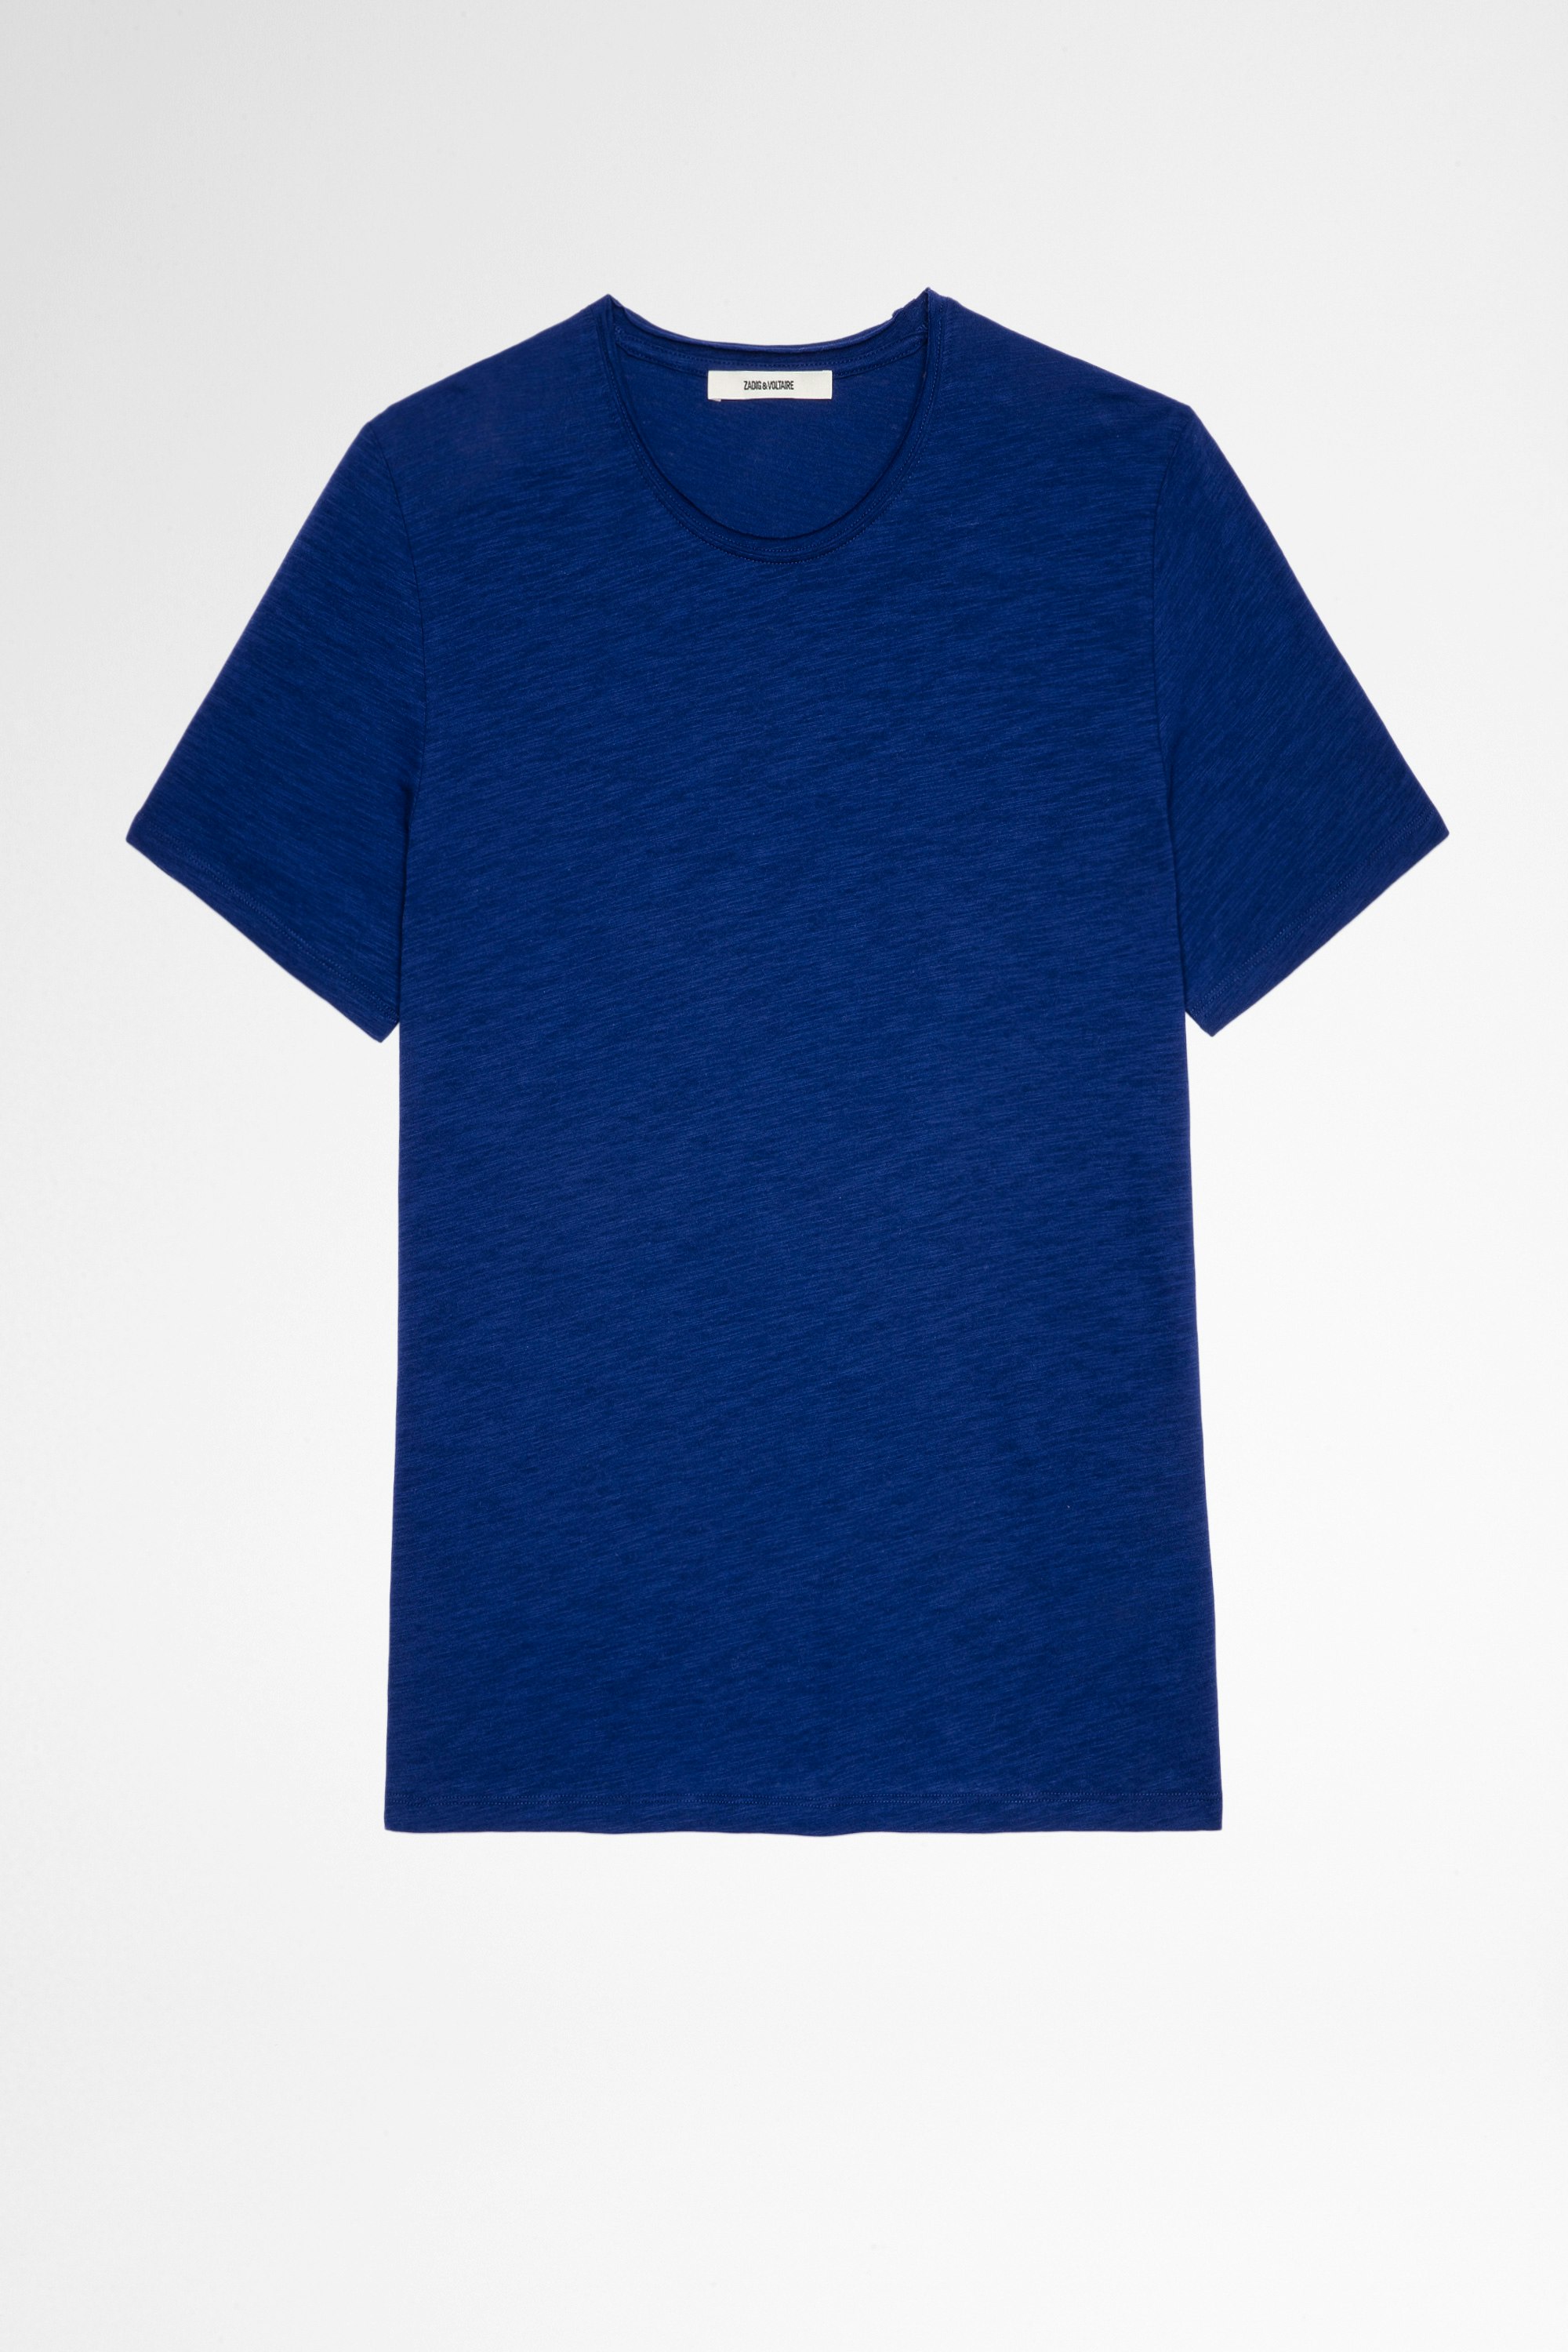 T-Shirt Toby Geflammt Königsblaues T-Shirt aus Baumwolle für Herren